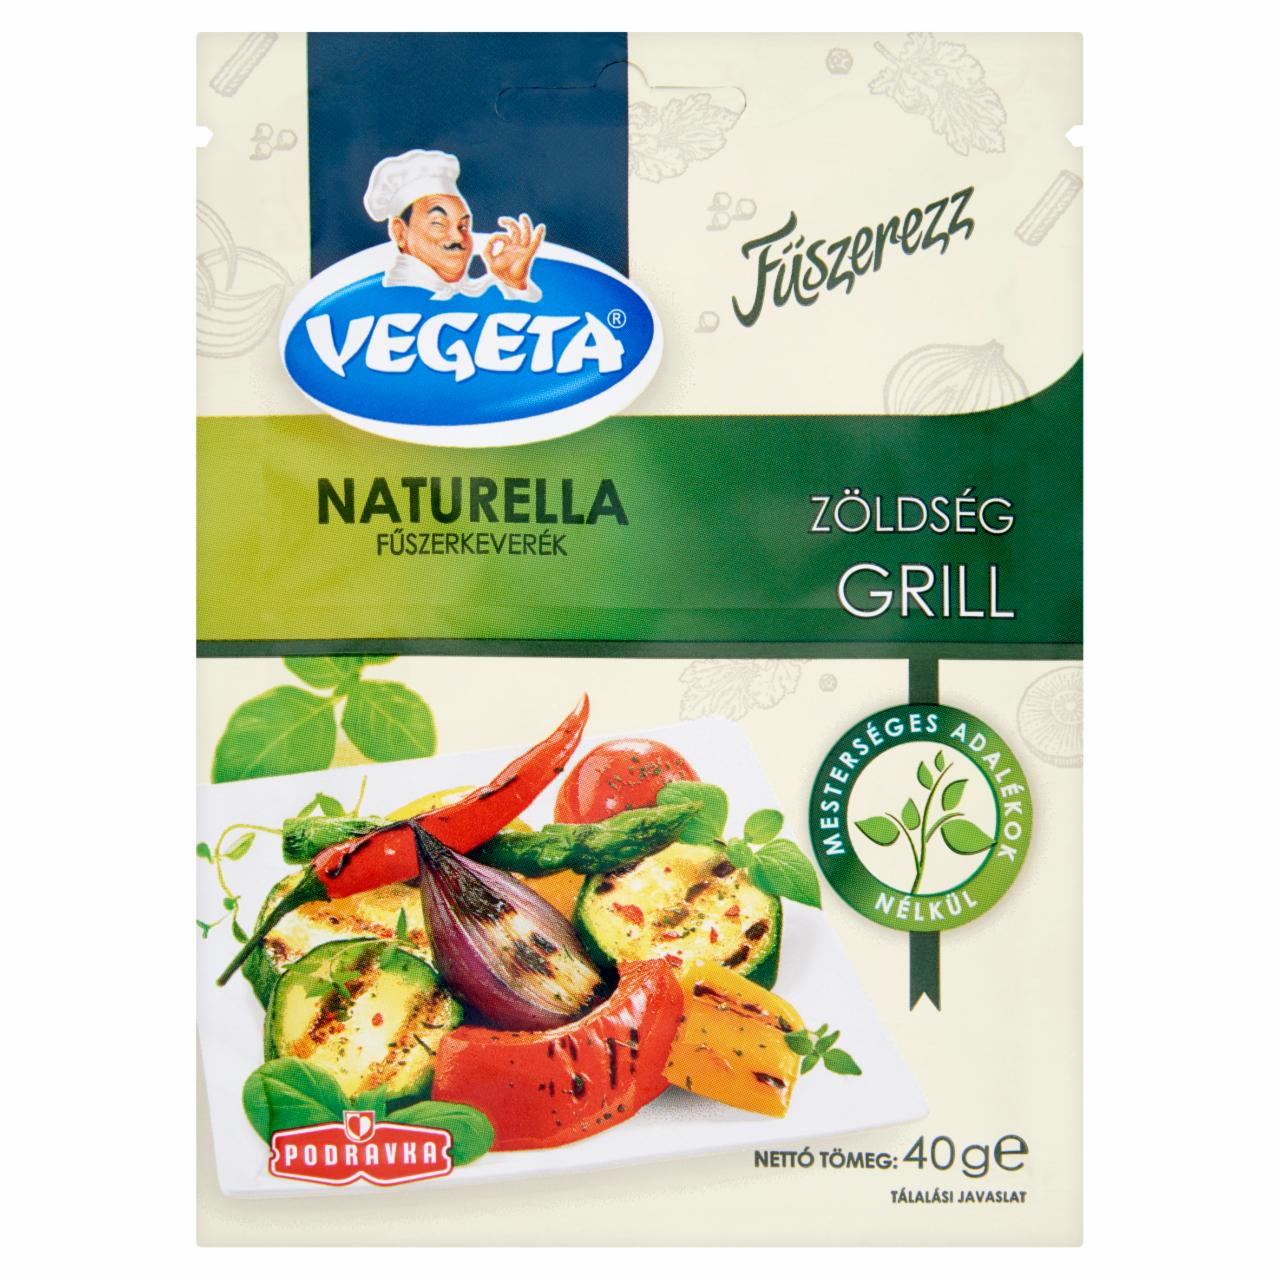 Képek - Vegeta Naturella zöldség grill fűszerkeverék 40 g